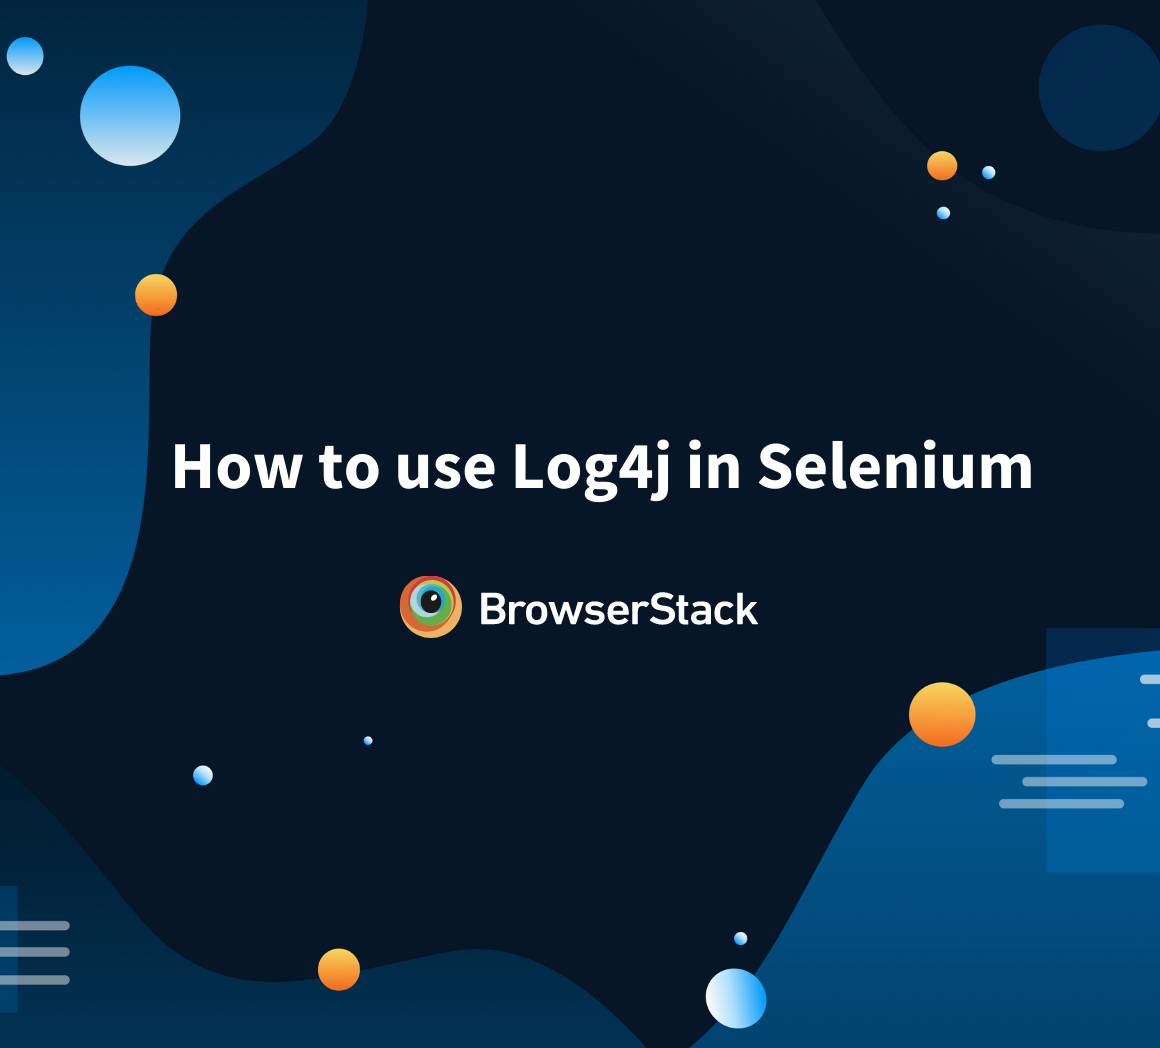 Using Log4j in Selenium